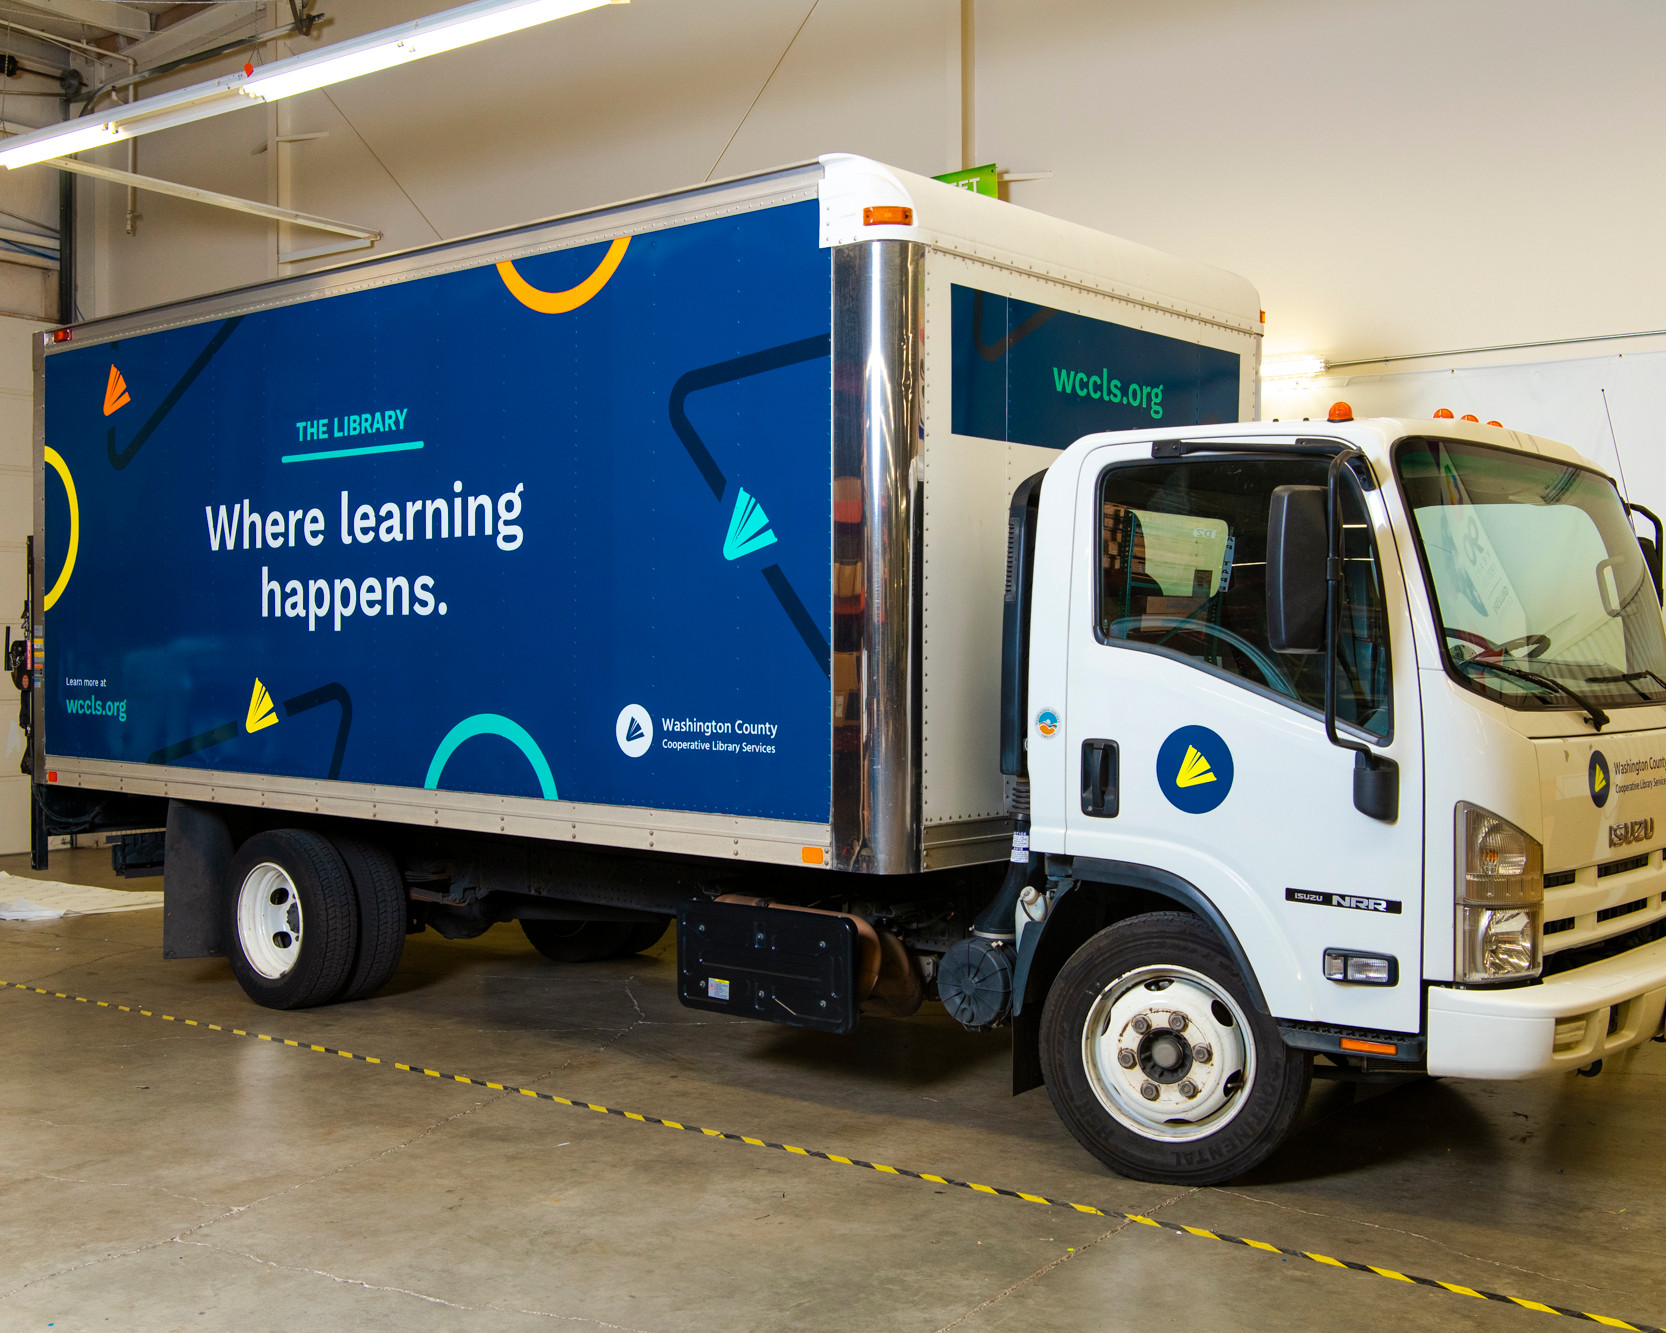 Camión de mensajería WCCLS que dice "Donde sucede el aprendizaje".